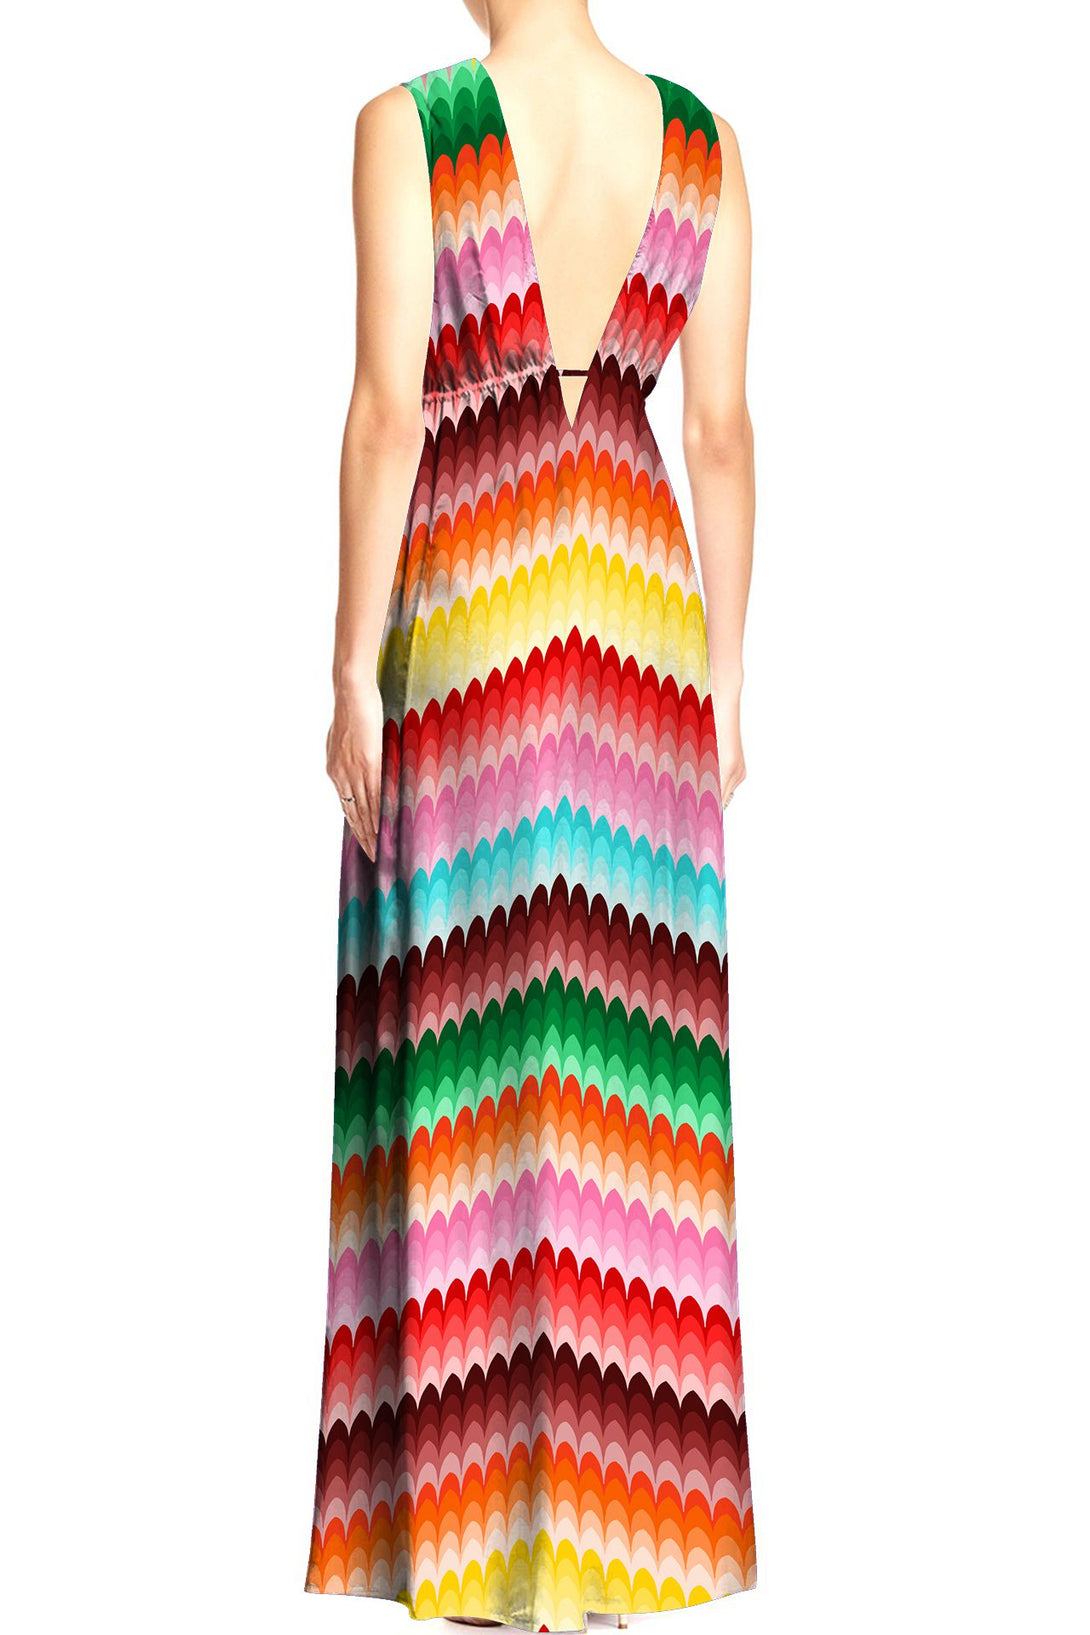  multi coloured maxi, long summer dresses for women, Shahida Parides, long dresses for women,